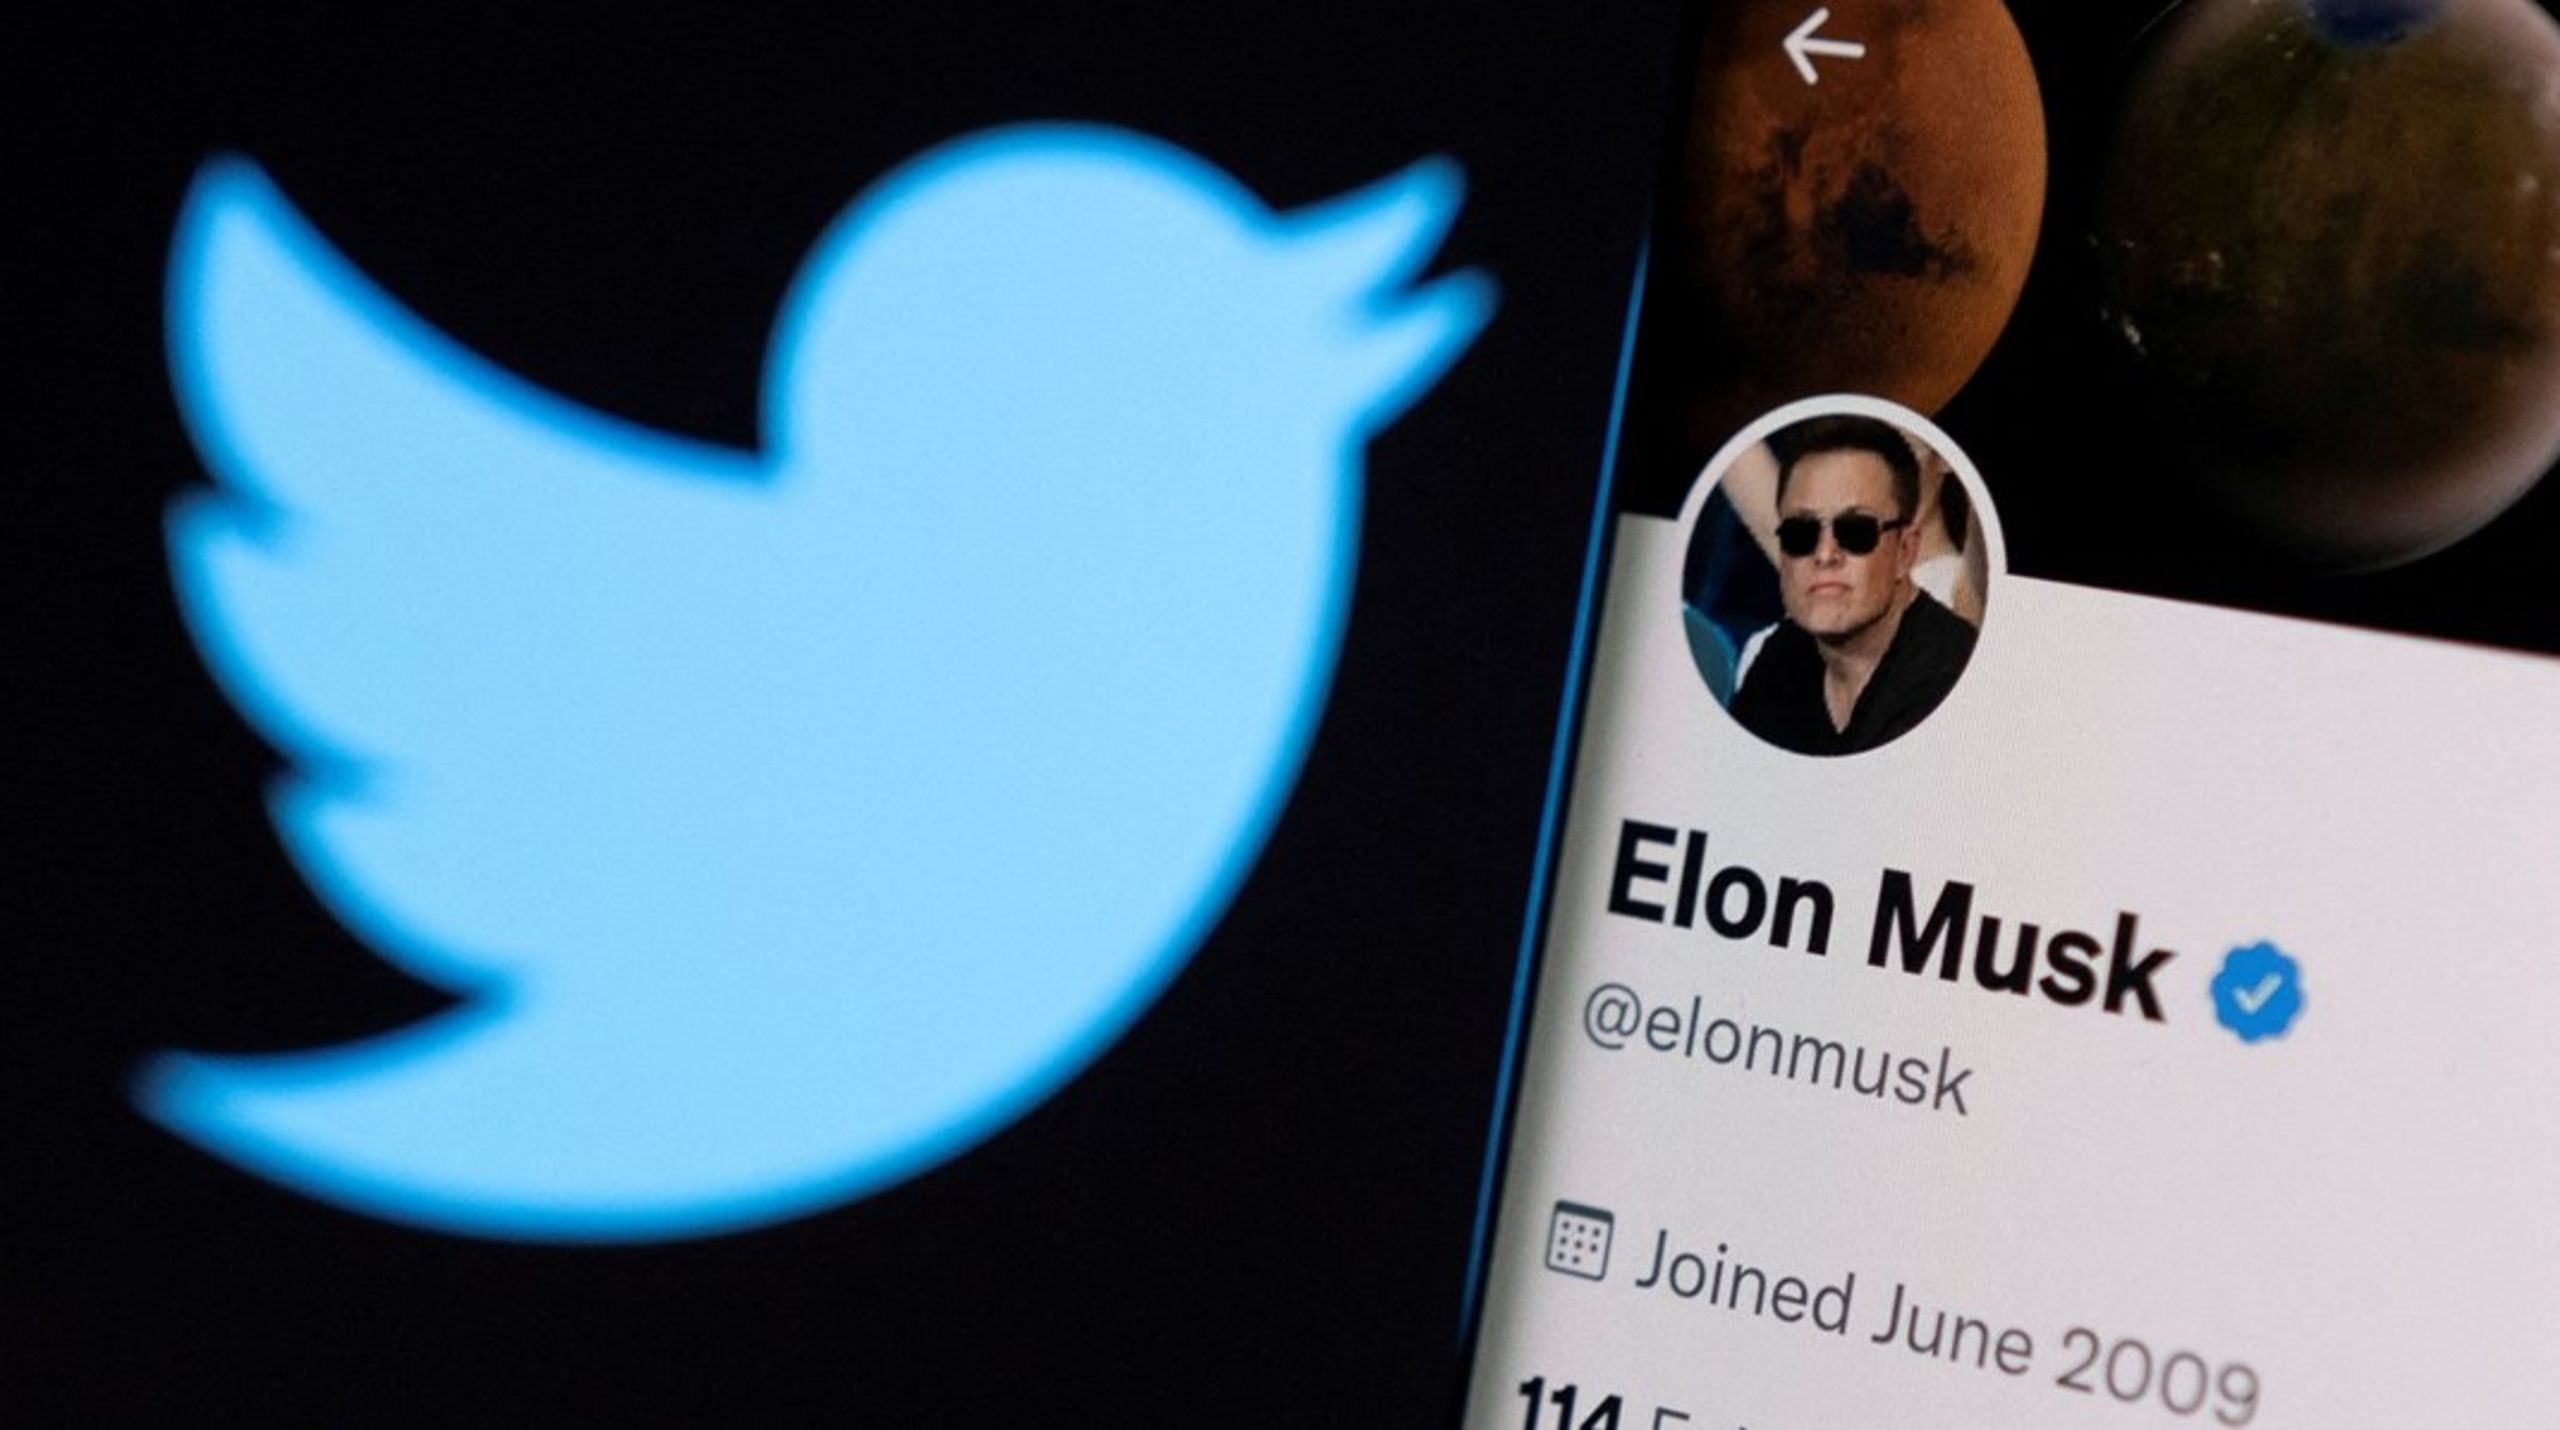 Elon Musk har meldt ud, at han godt kunne tænke sig at opkøbe SoMe-platformen Twitter. Formålet skulle angiveligt være at skabe "en global platform for ytringsfrihed", skriver Johanne Dalgaard.